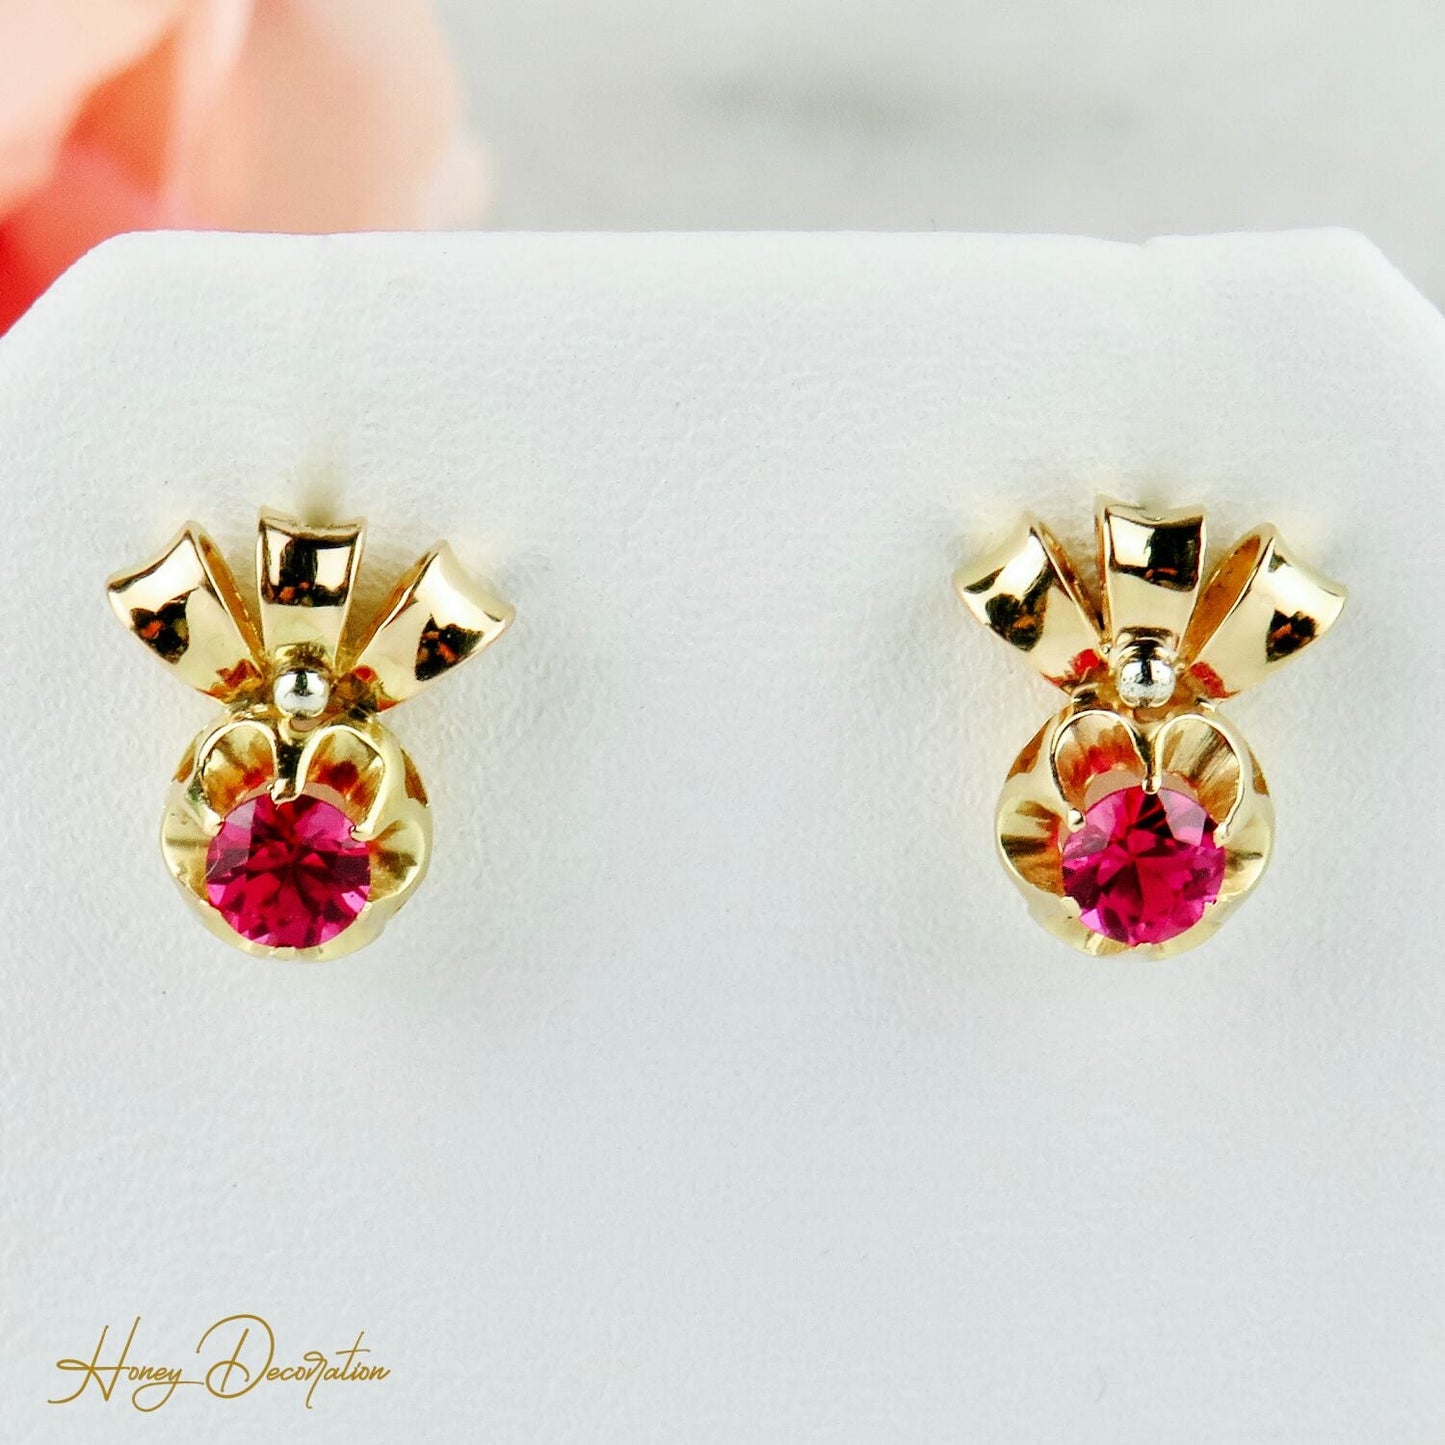 Vintage-Ohrringe aus 14 Karat Gold mit Rubinen - Honey Decoration